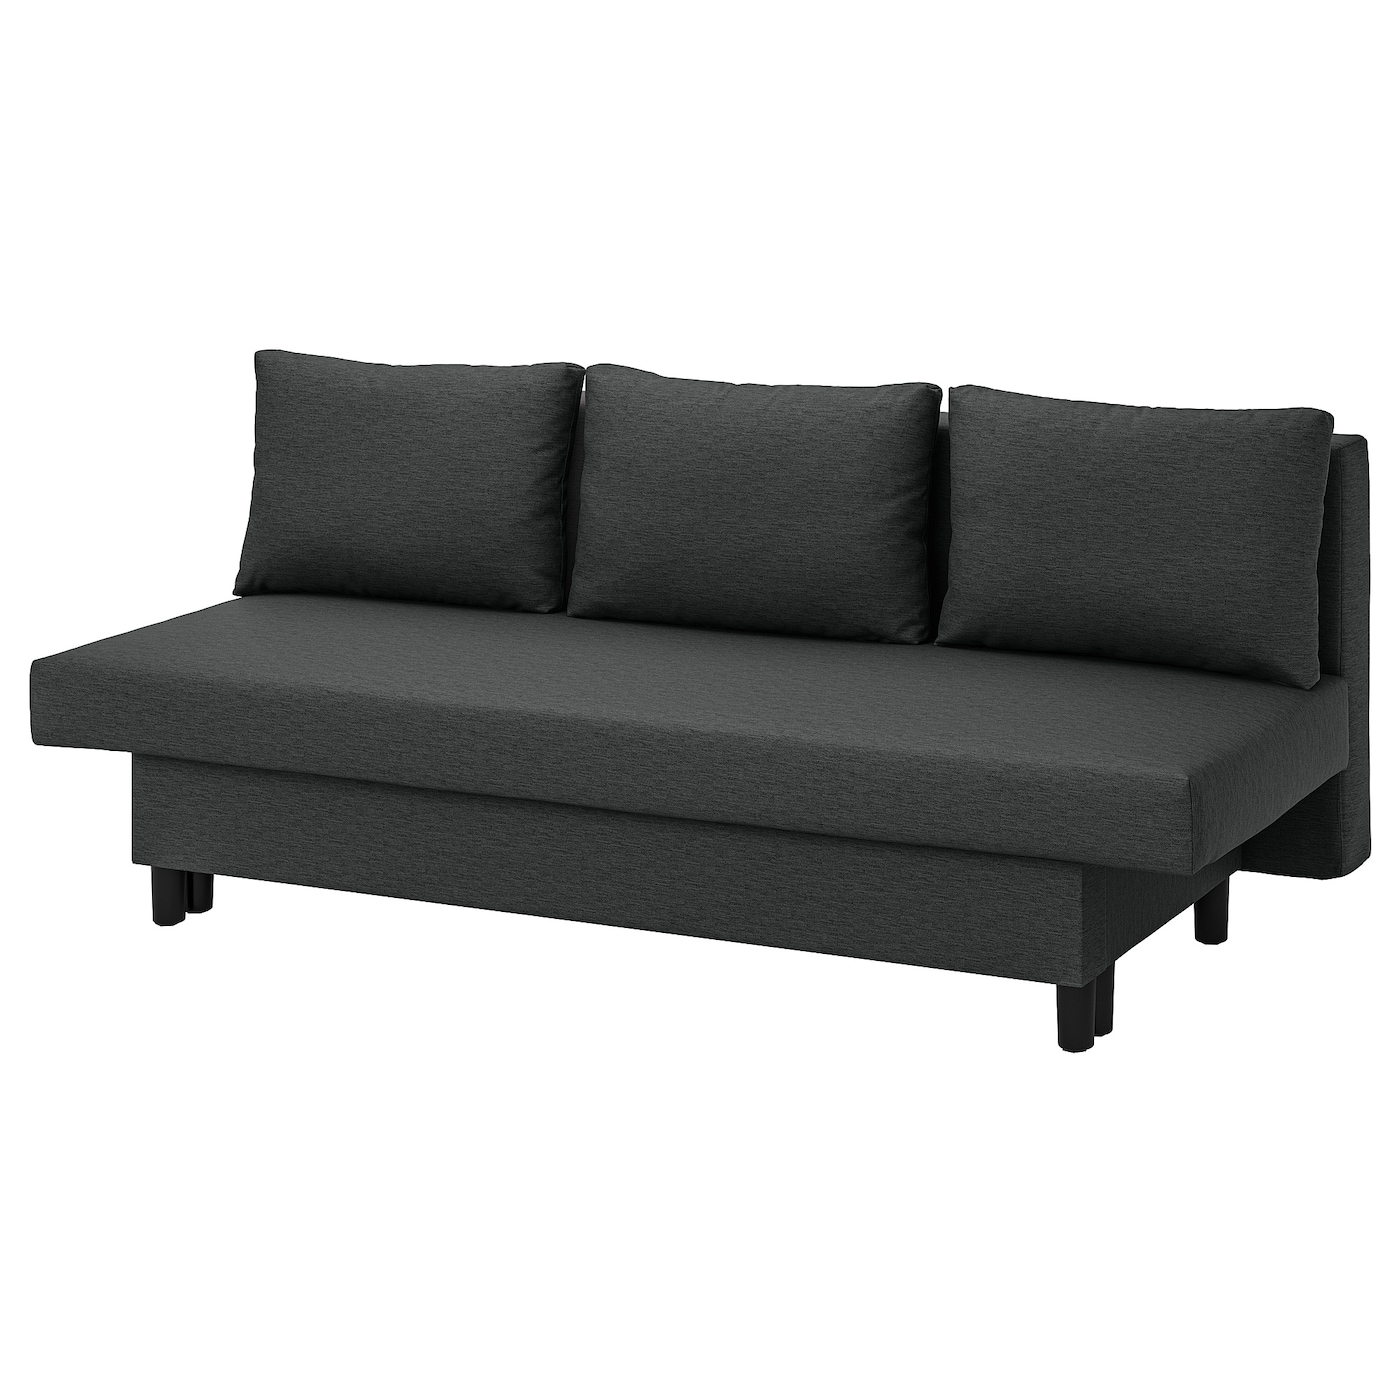 ЭЛВДАЛЕН 3-х раскладной диван-кровать, Книса темно-серый ÄLVDALEN IKEA орматек диван кровать sunset ткань шенилл виконт темно серый 140x200